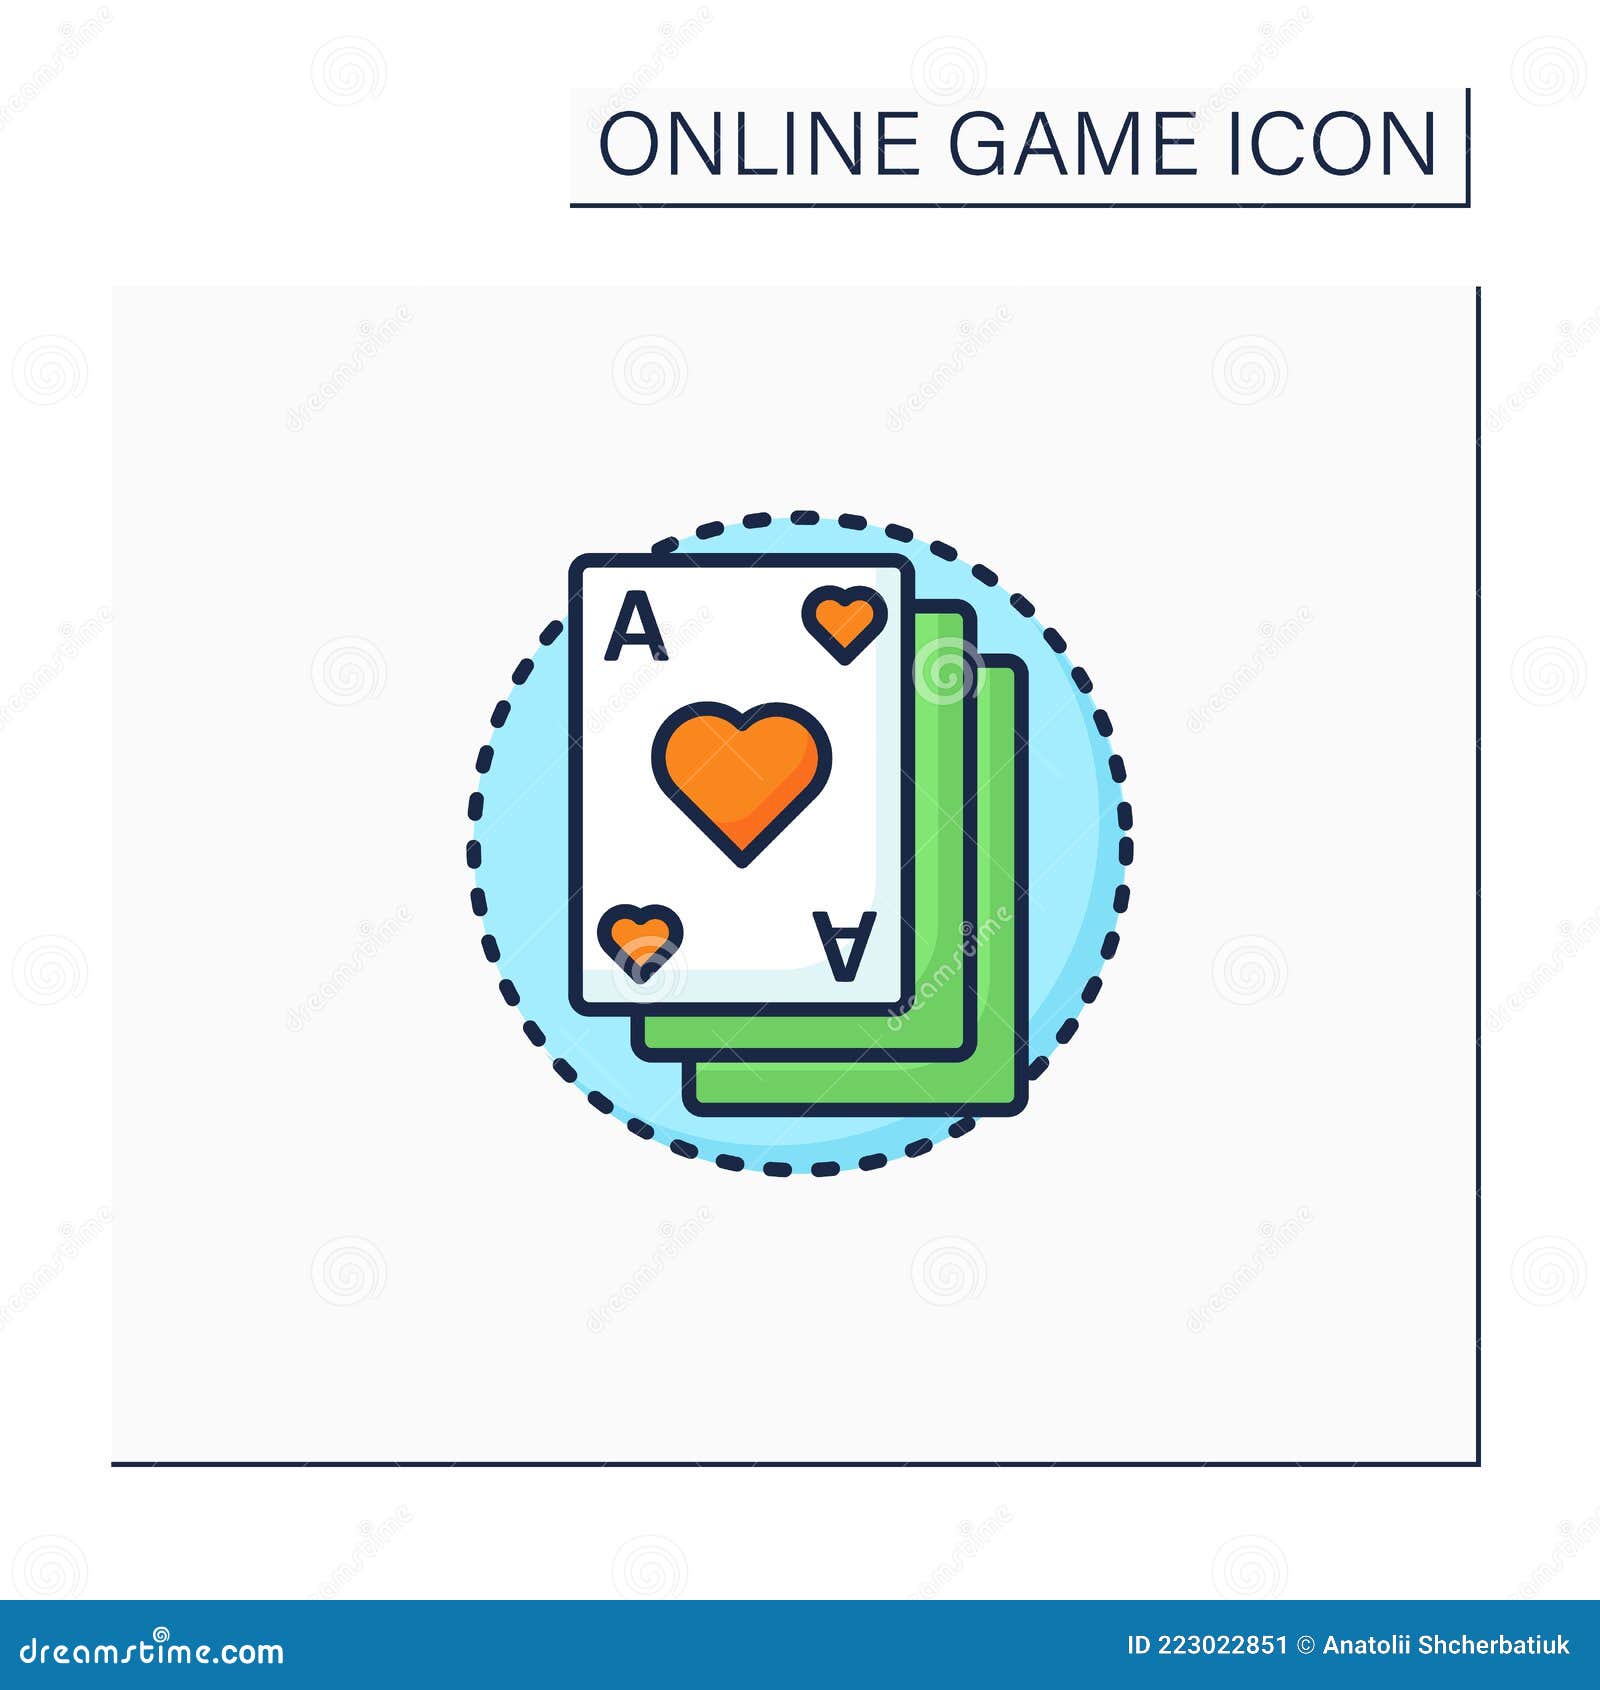 Carta de baralho - ícones de jogos grátis